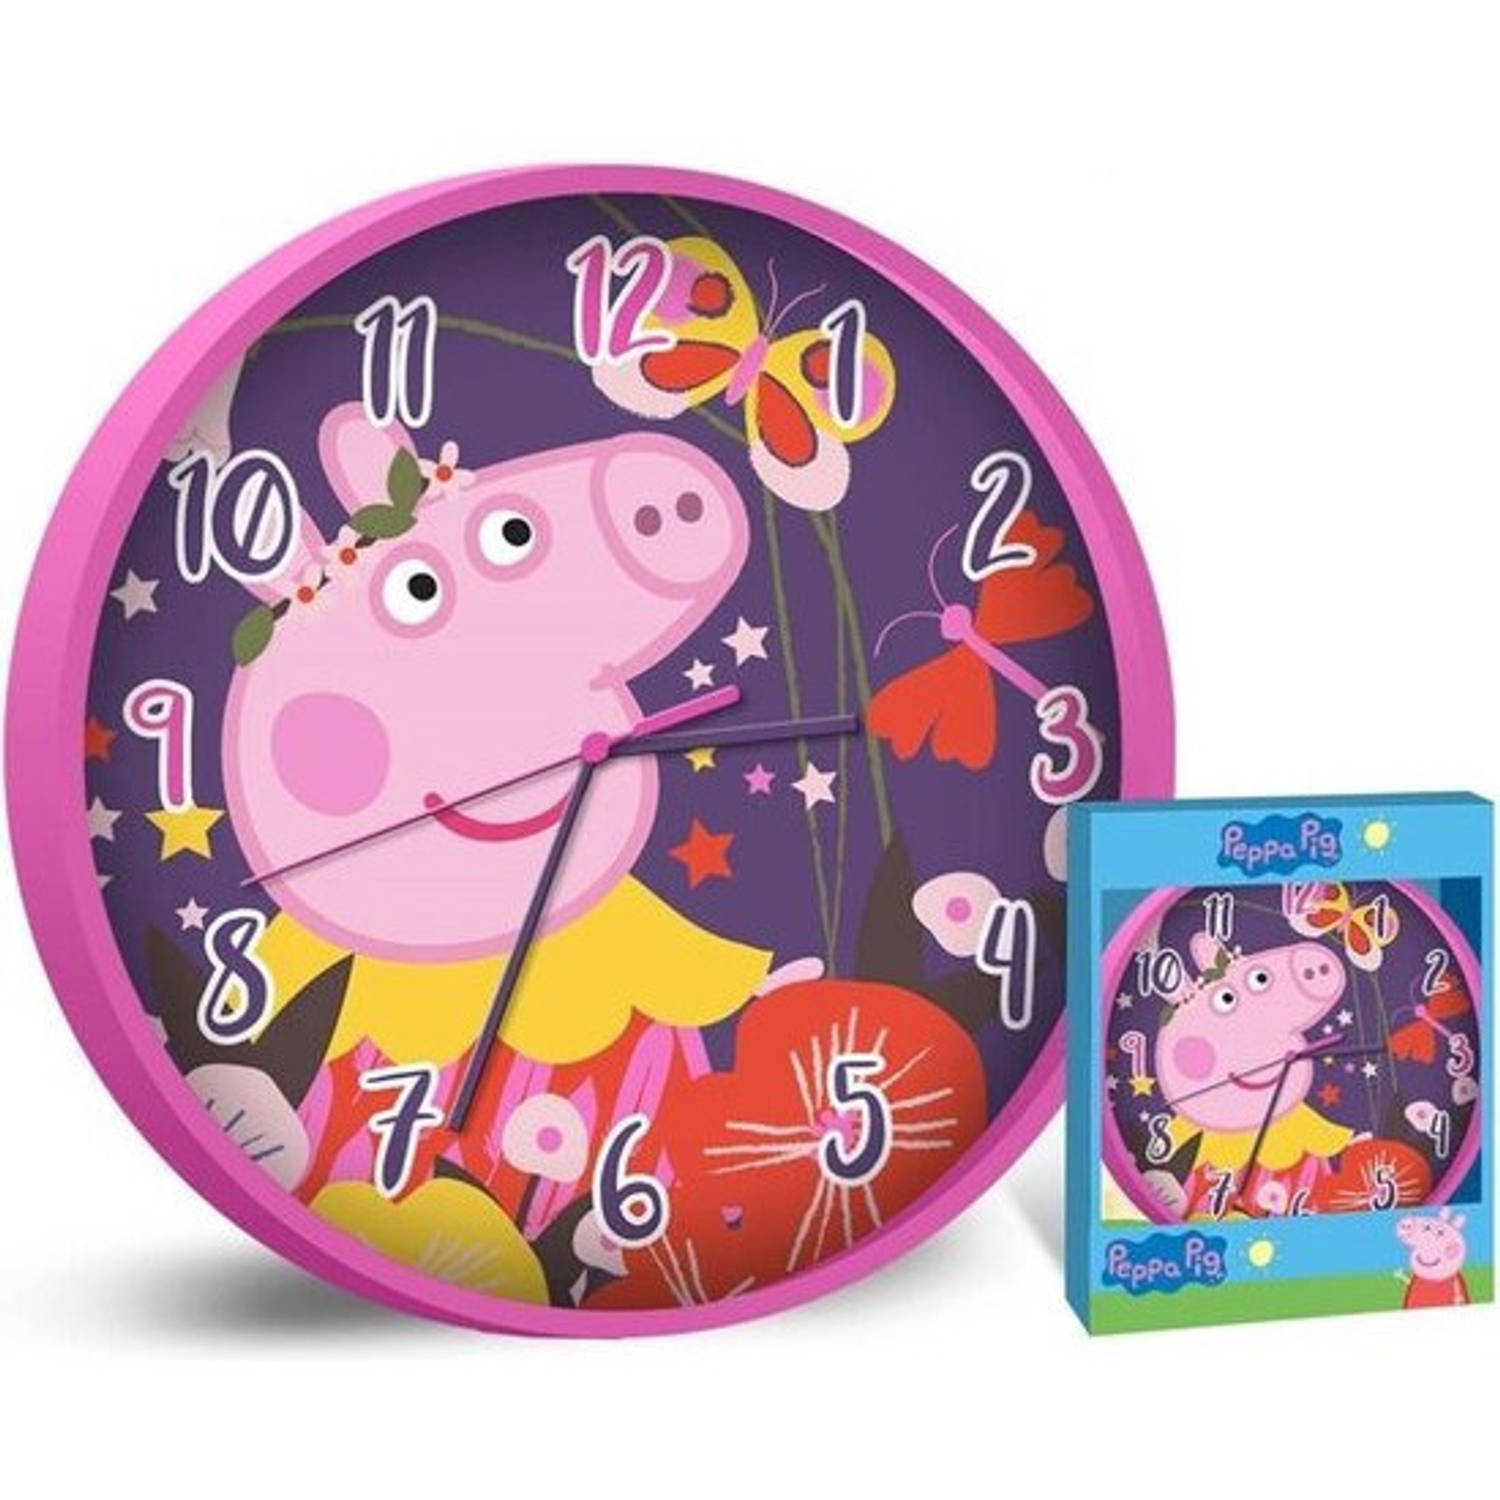 Nickelodeon Wandklok Peppa Pig - 25 Cm - Roze / paars